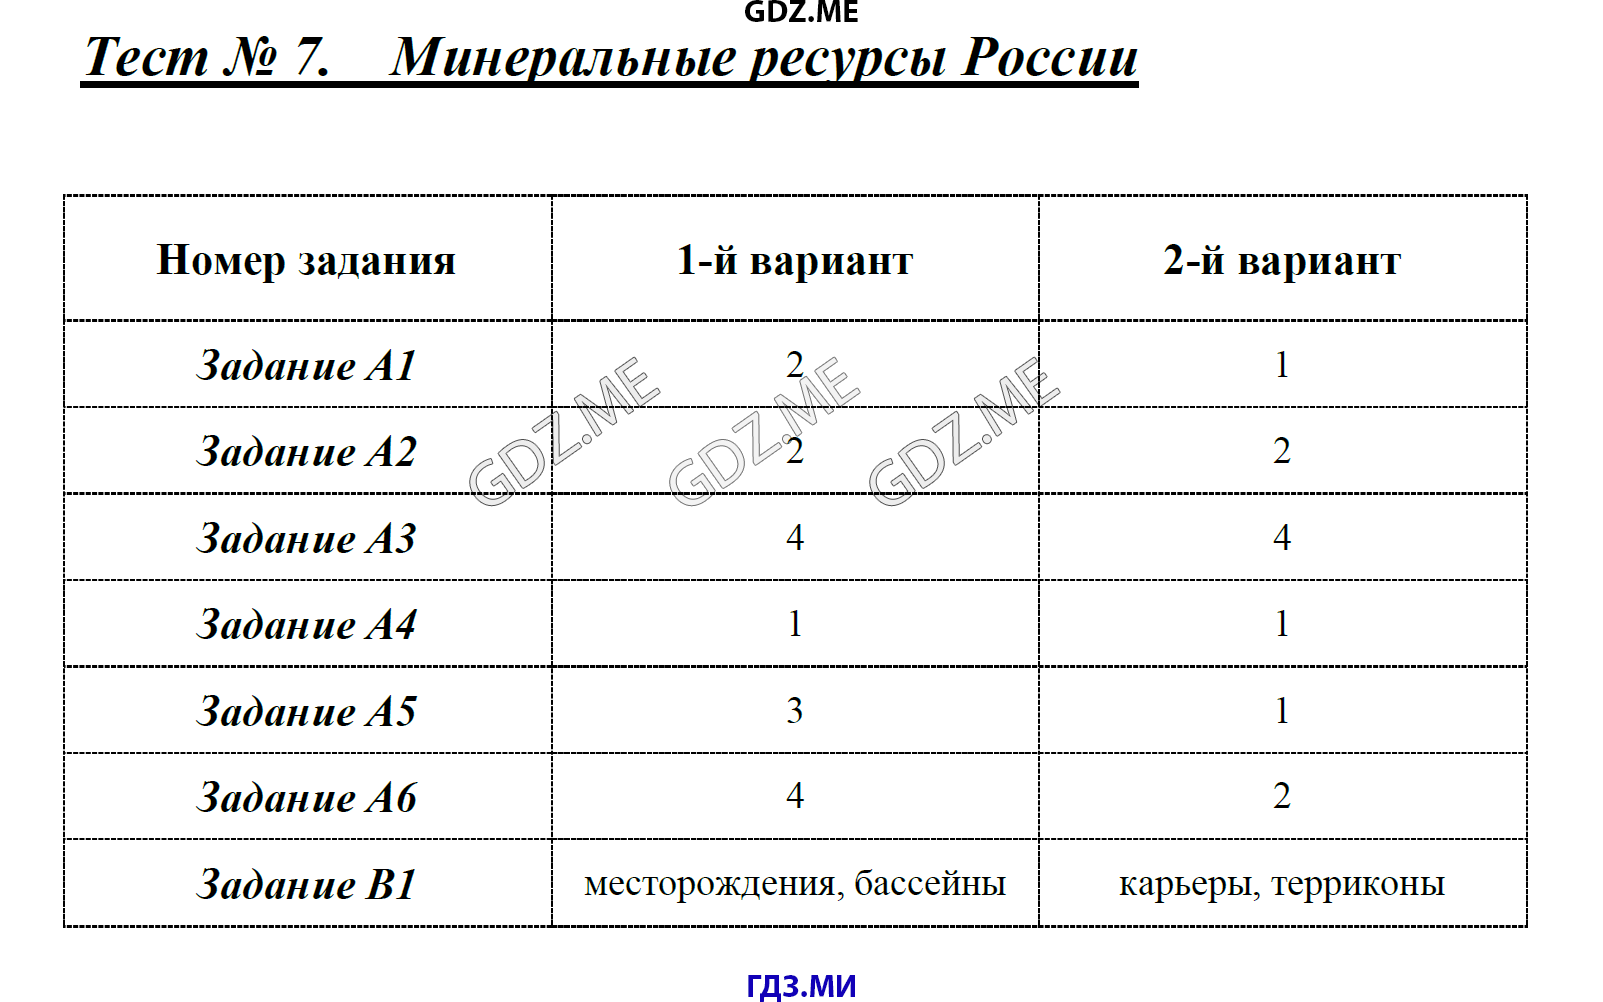 Тесты с ответами географии 8 класс реки россии